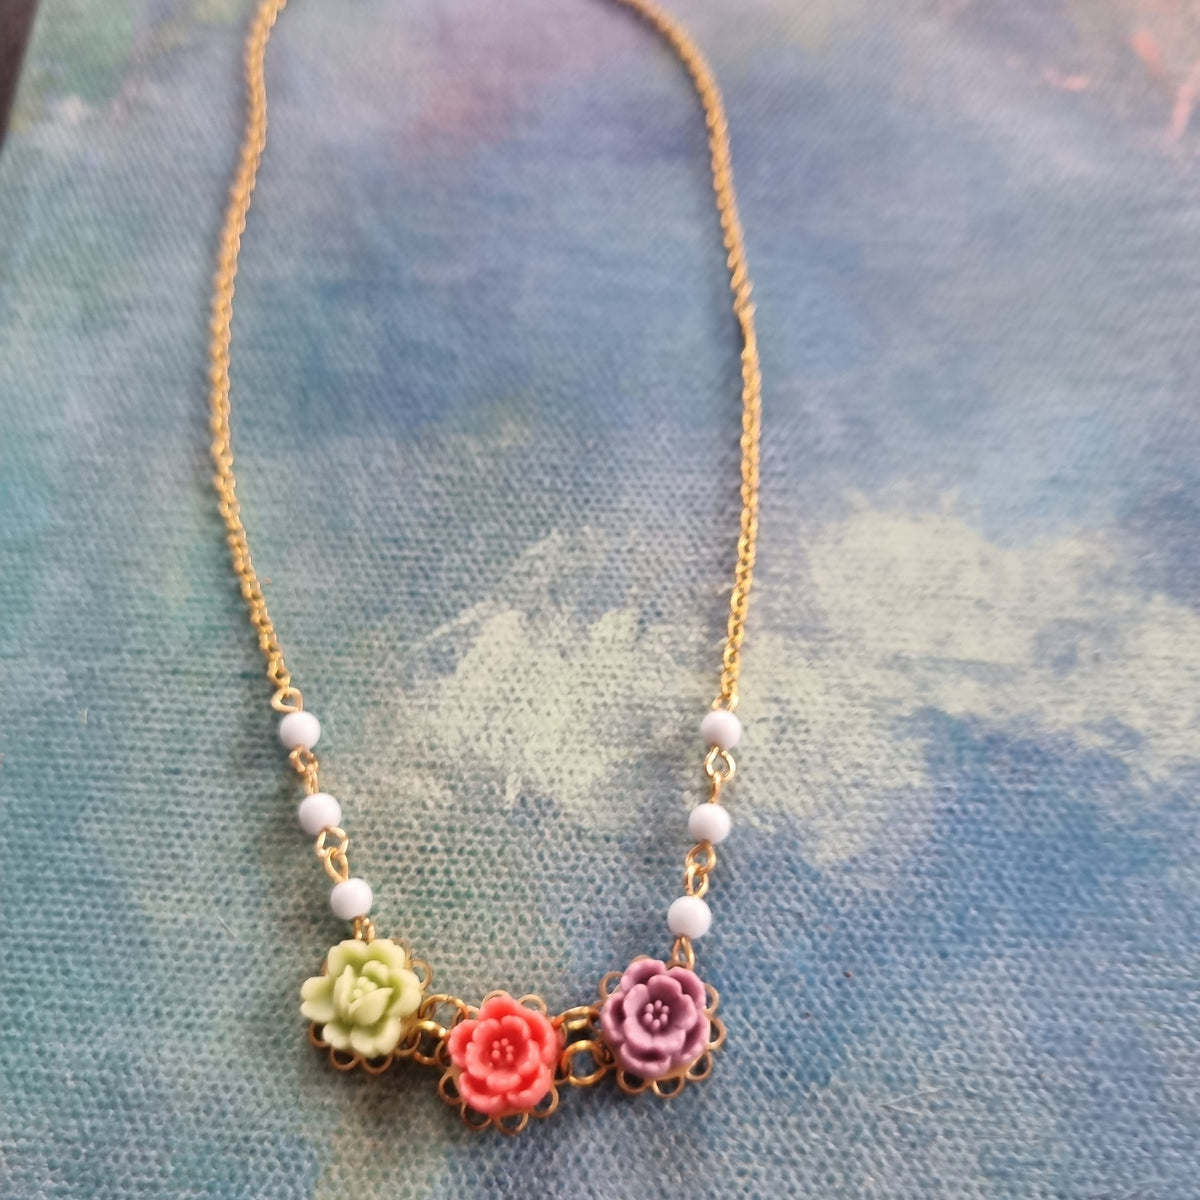 Lille halskæde #3 - Hårpynt med blomster og perler til bryllup, konfirmation og fest